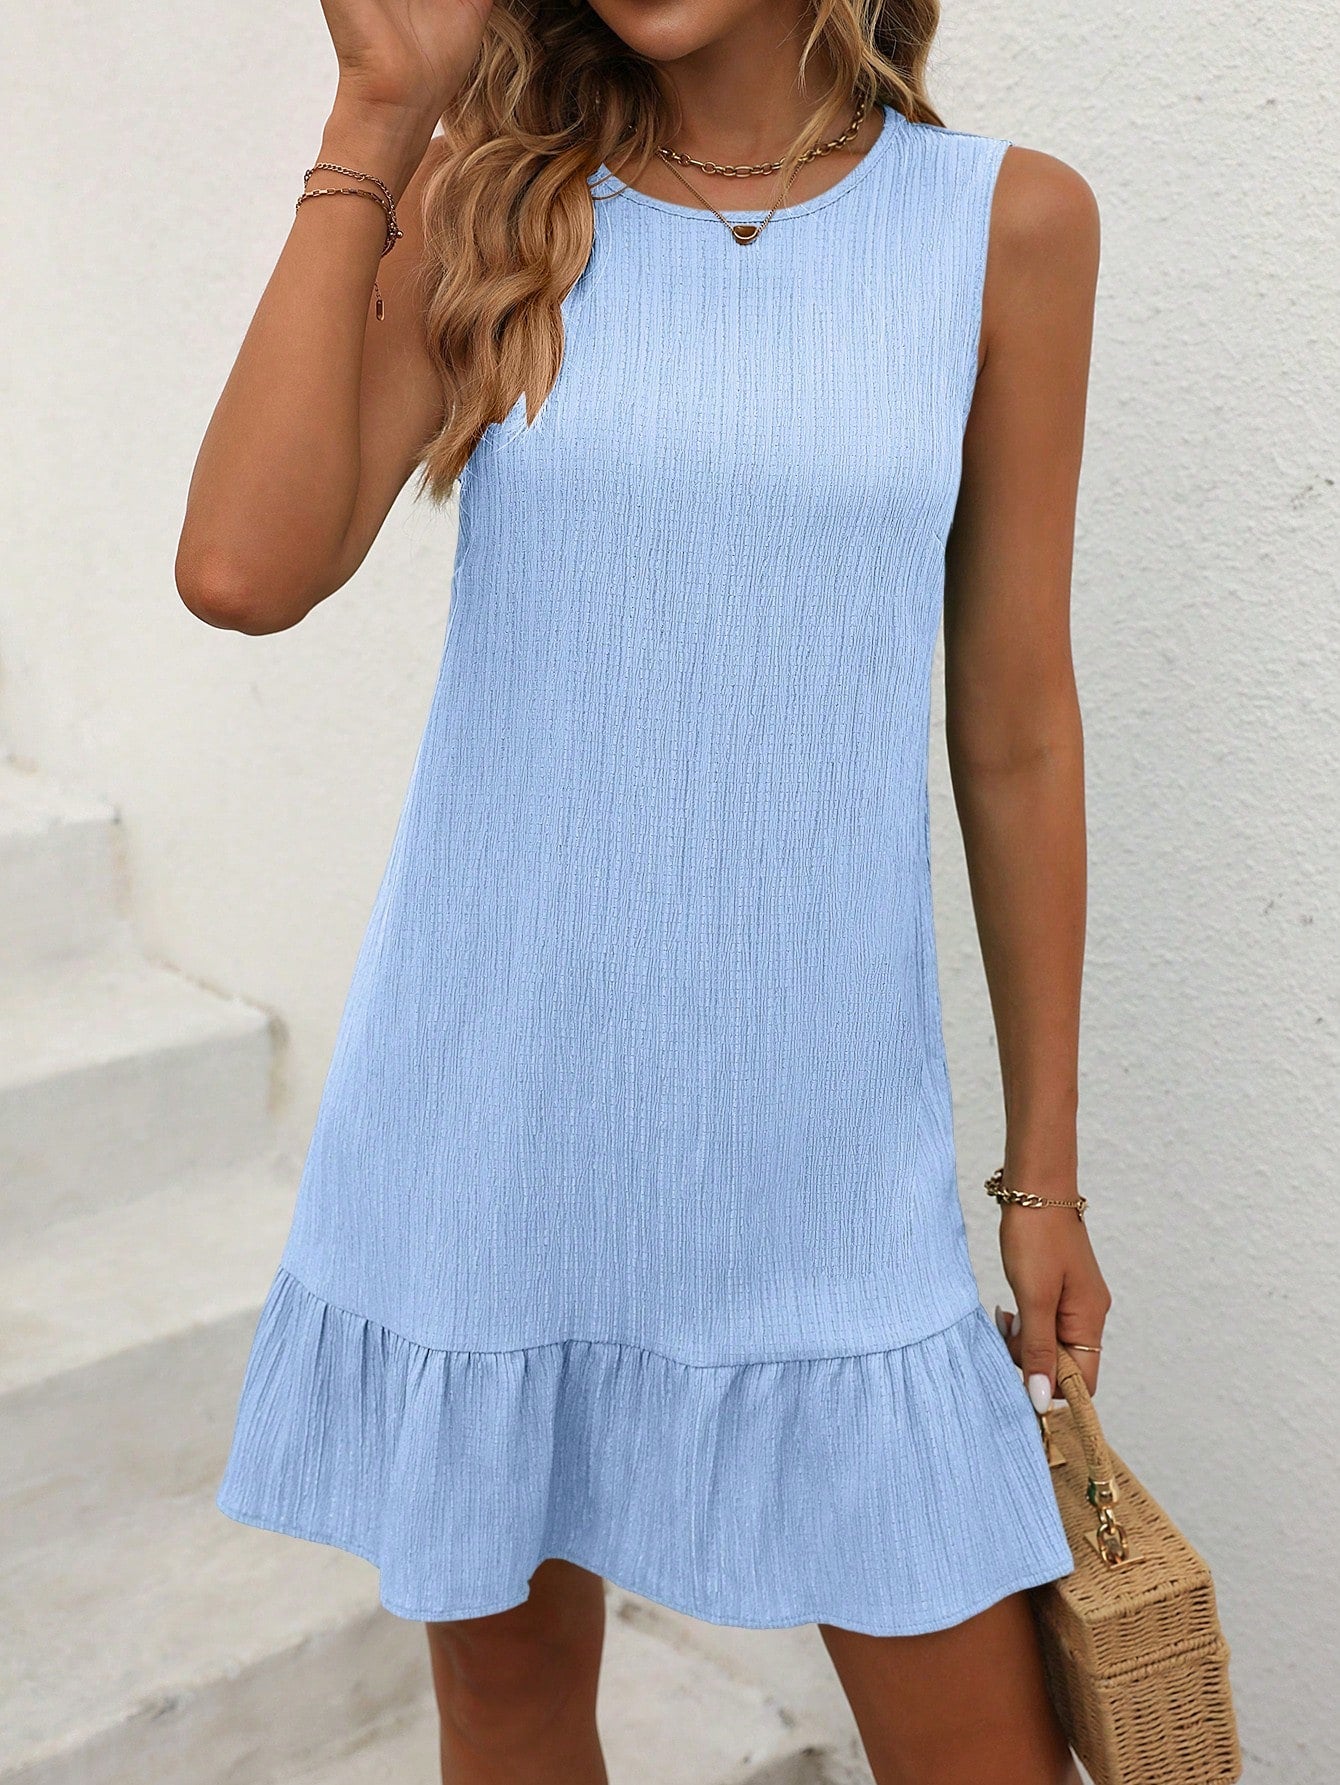 Cute Summer Sleeveless Dress - Button Details, Ruffle Hem, Drop Waist, Non-Stretch Fabric